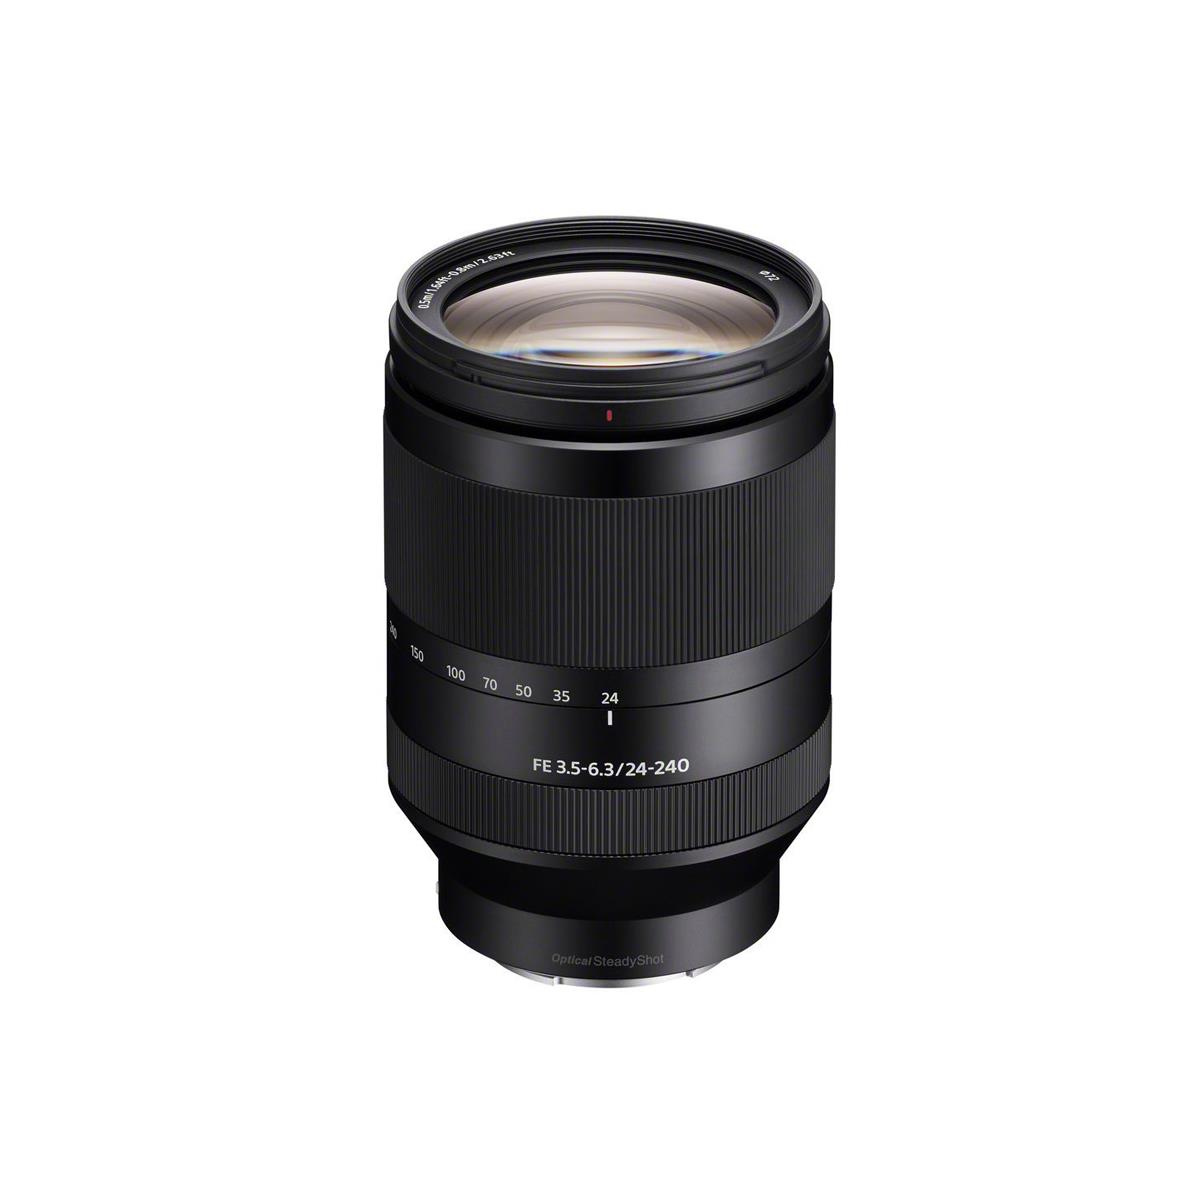 Image of Sony FE 24-240mm f/3.5-6.3 OSS Lens for Sony E